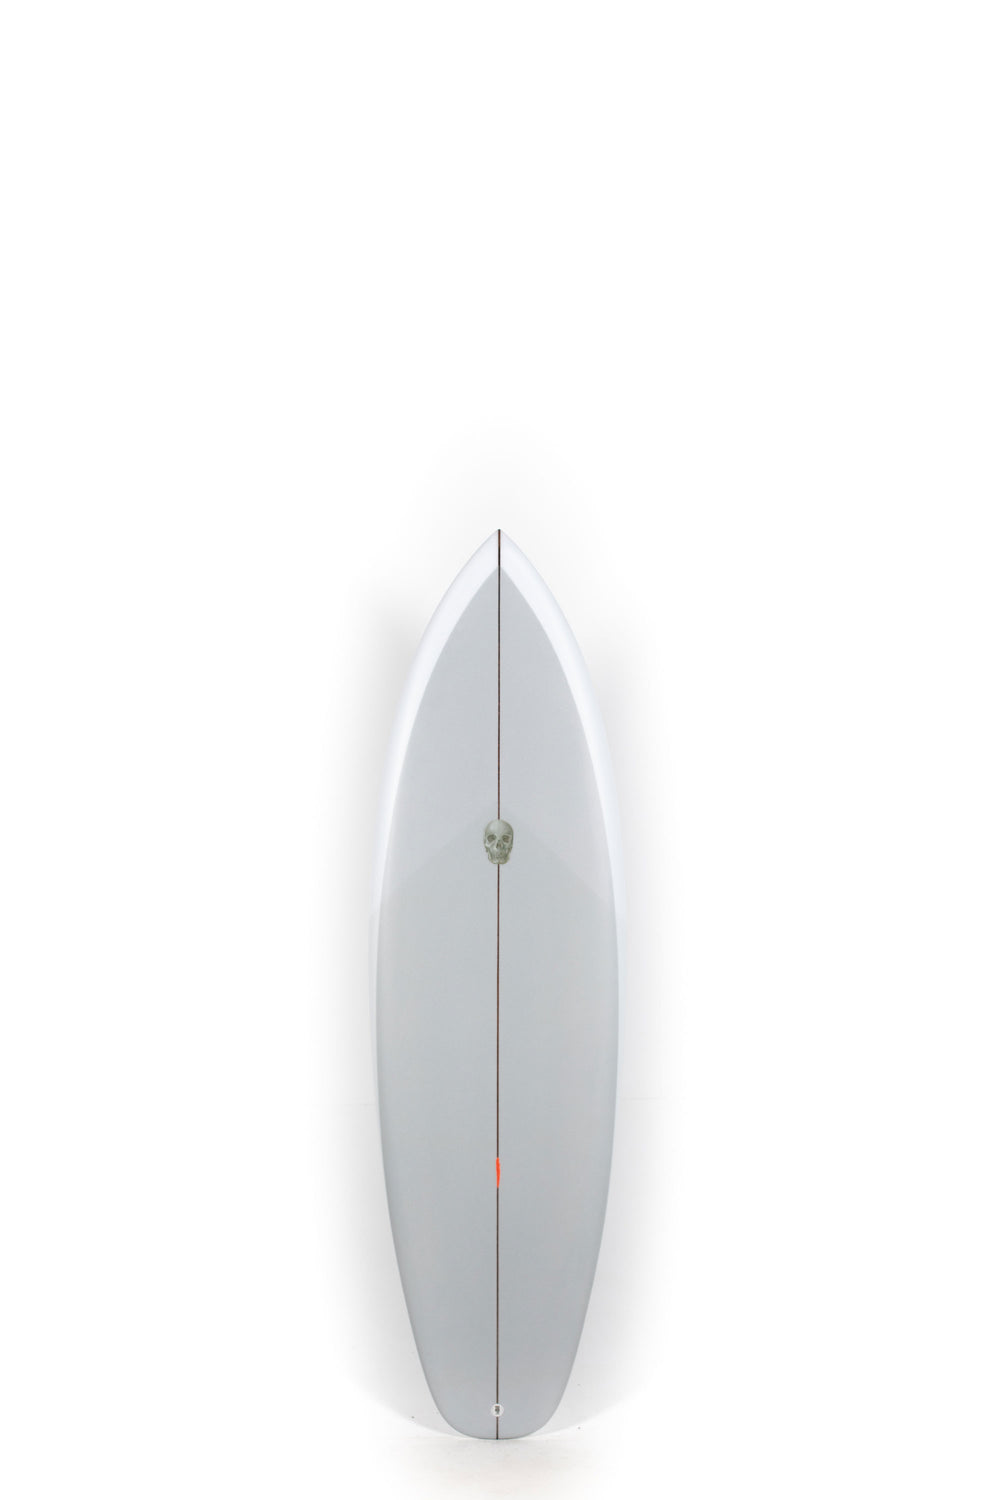 Pukas Surf Shop - Christenson Surfboard  - SURFER ROSA - 5'8” x 19 1/2 x 2 3/8 - CX04999